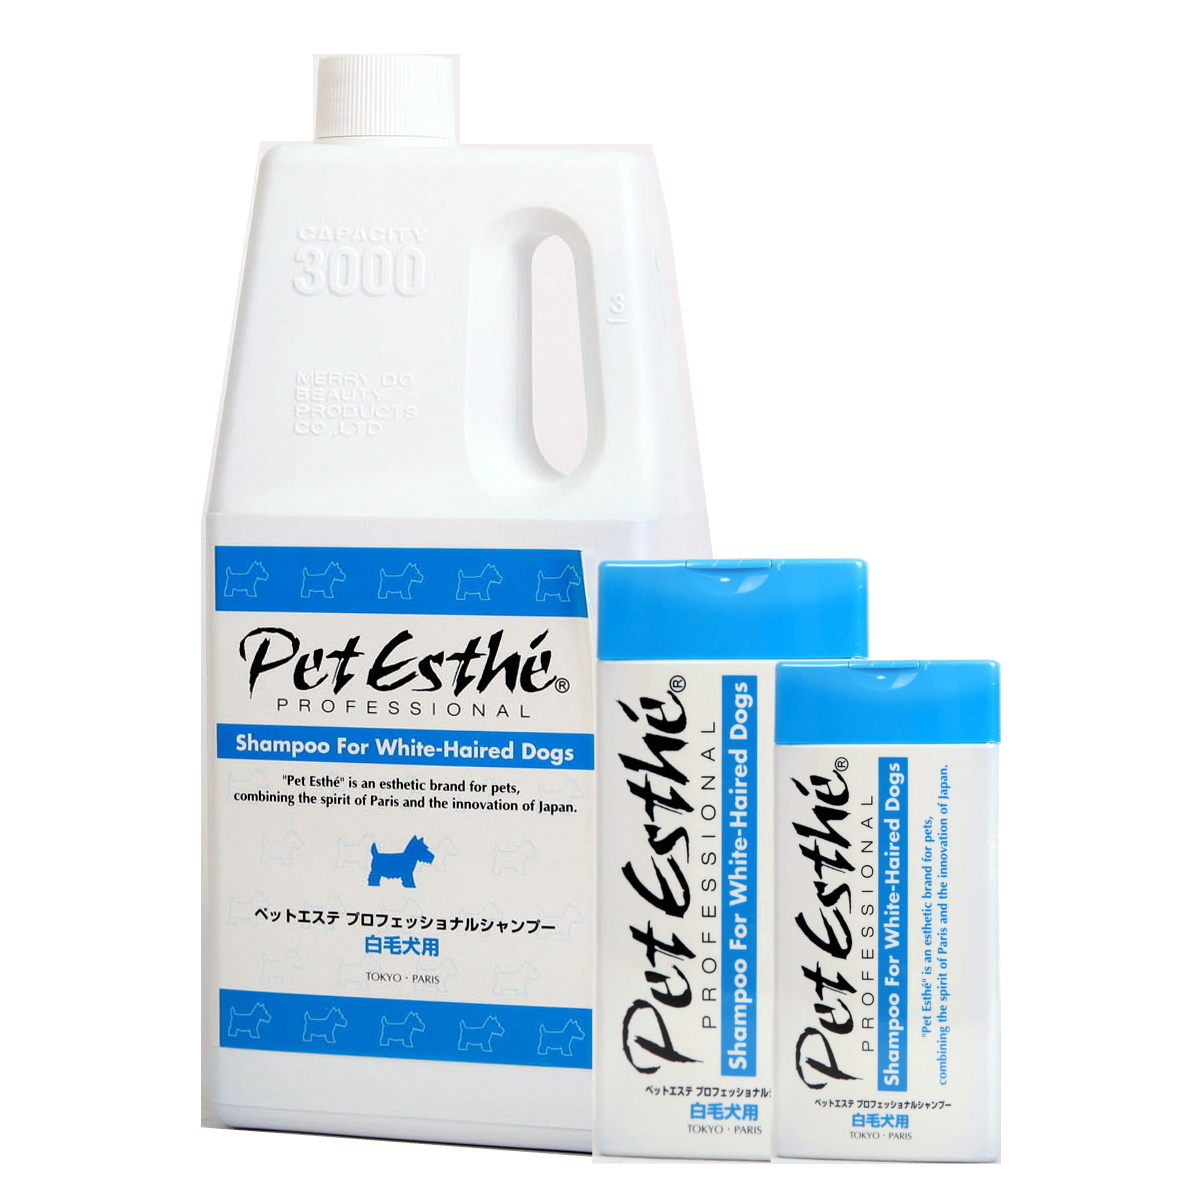 PETSLY Mildes Hunde & Katzenabwehrspray, Hygienisches Hunde & Katzenspray  gegen urinieren im Haus, auch als Kratz & Knabberschutz, Anti Hunde Spray  zur Hundeabwehr oder als Katzenschreck Spray 500ml